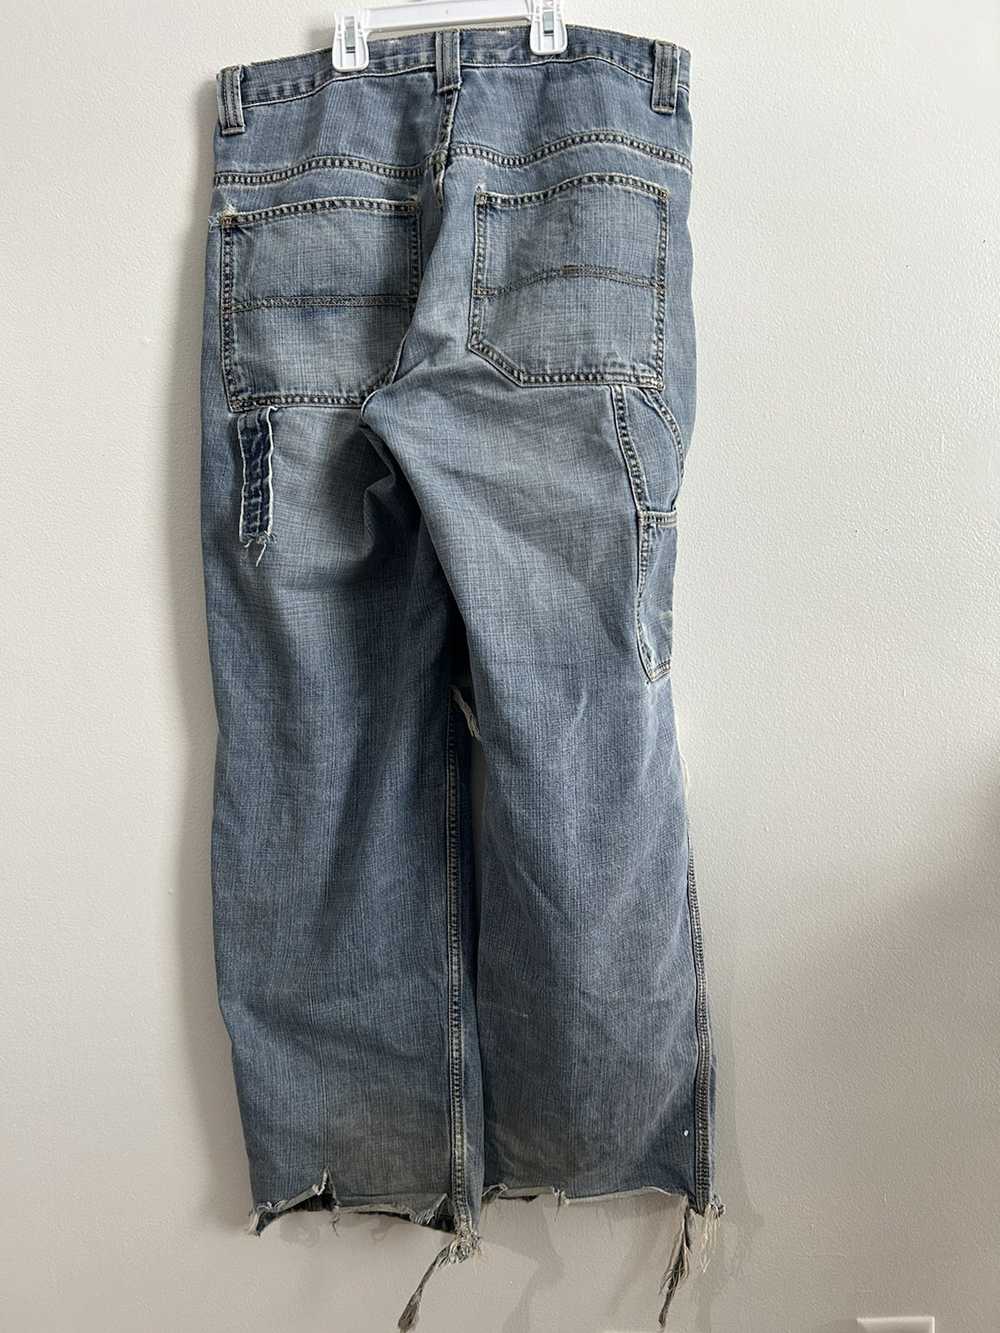 Other × Vintage Thrashed carpenter Jeans - image 2